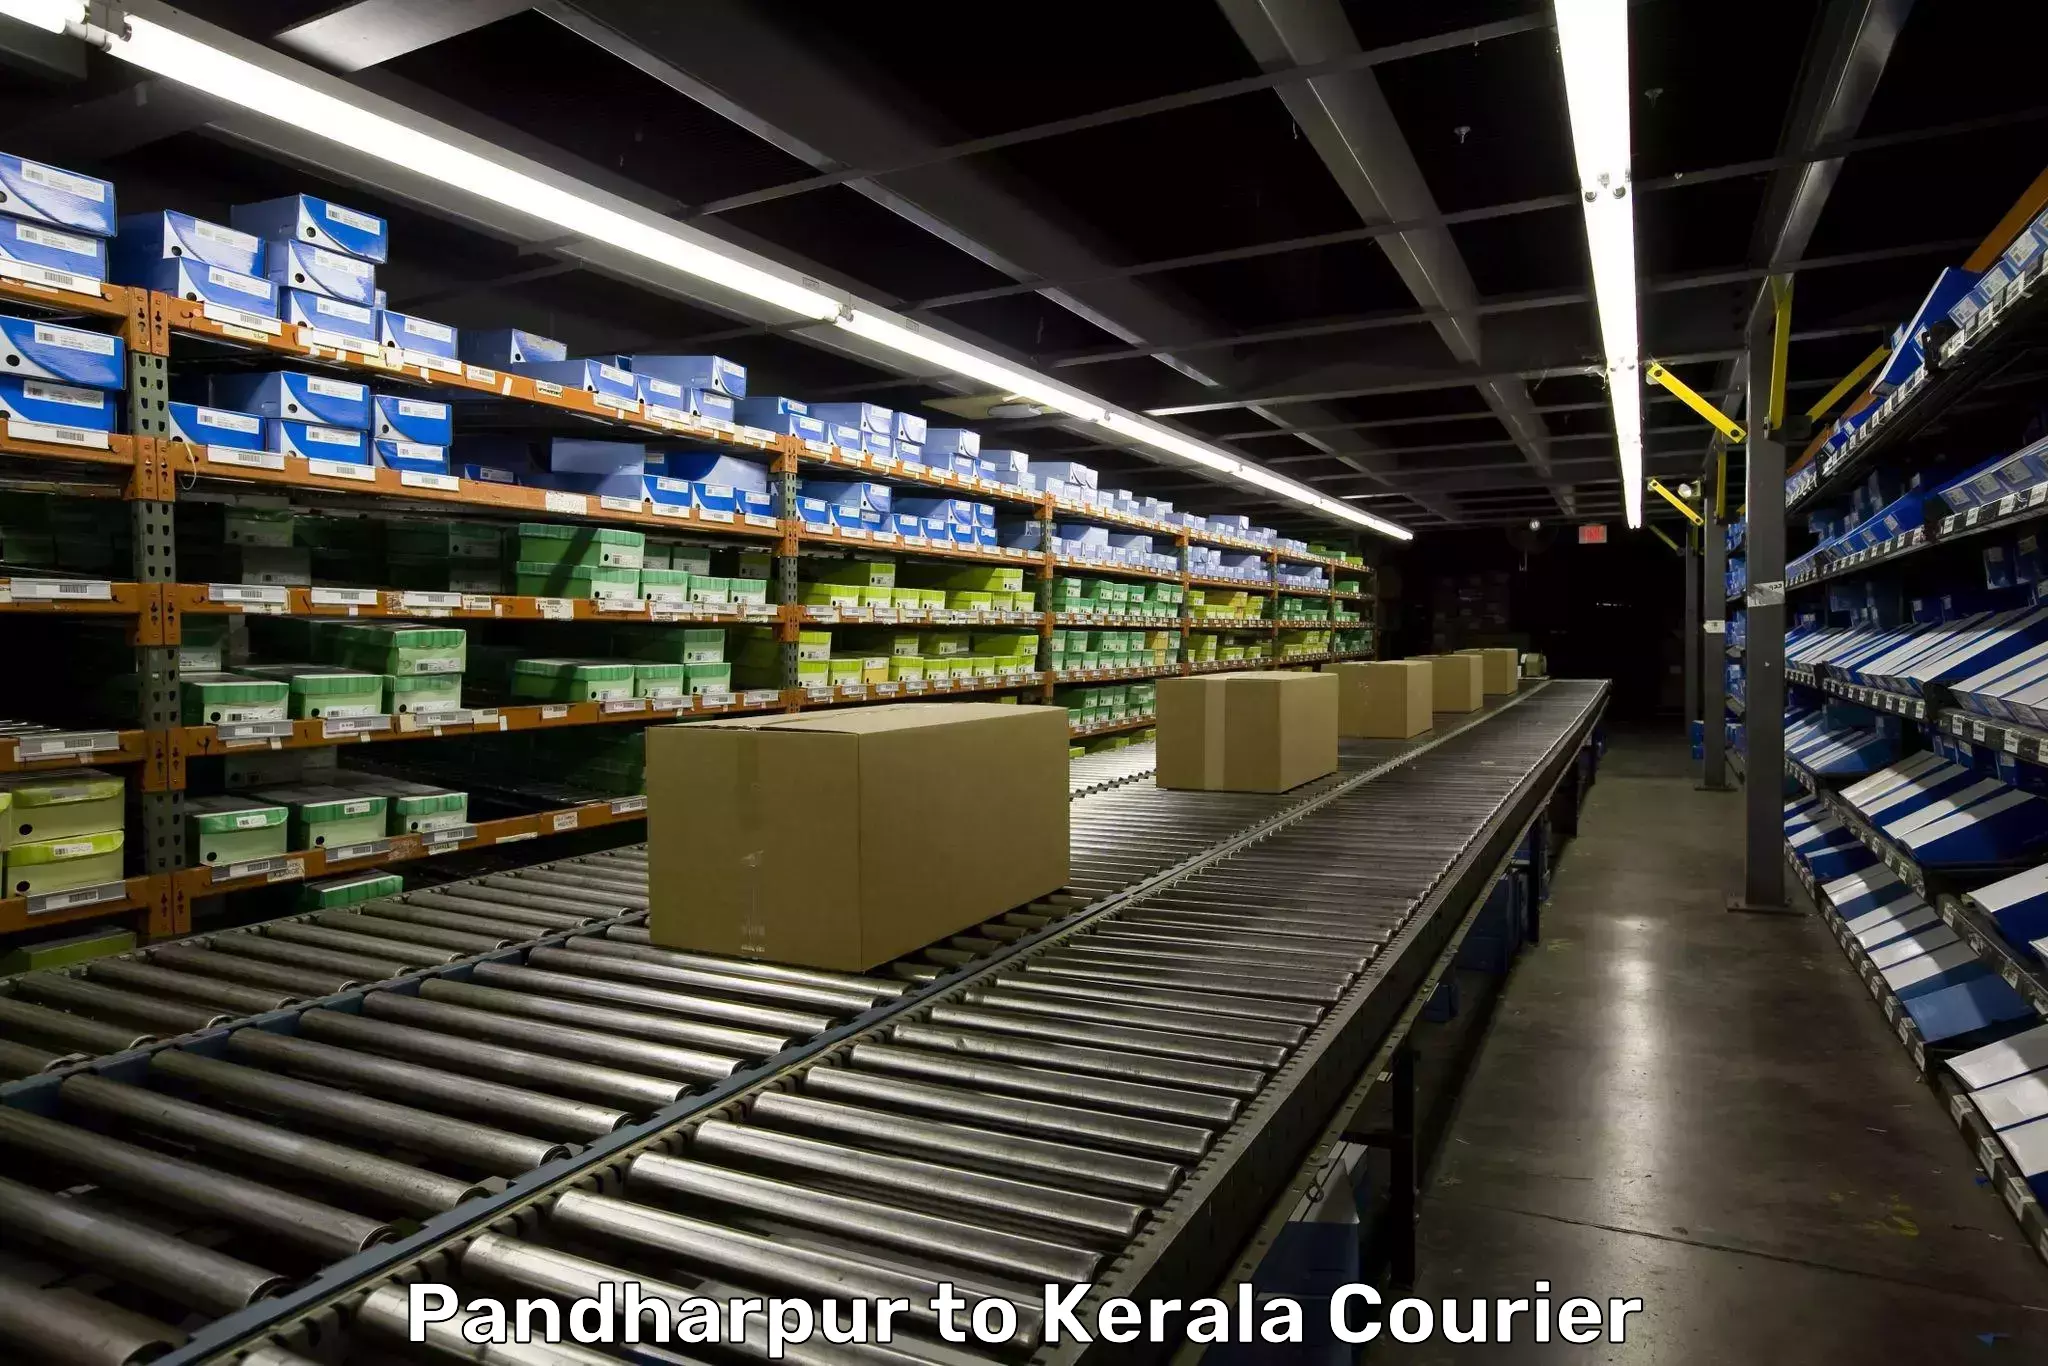 Hassle-free luggage shipping Pandharpur to Kerala